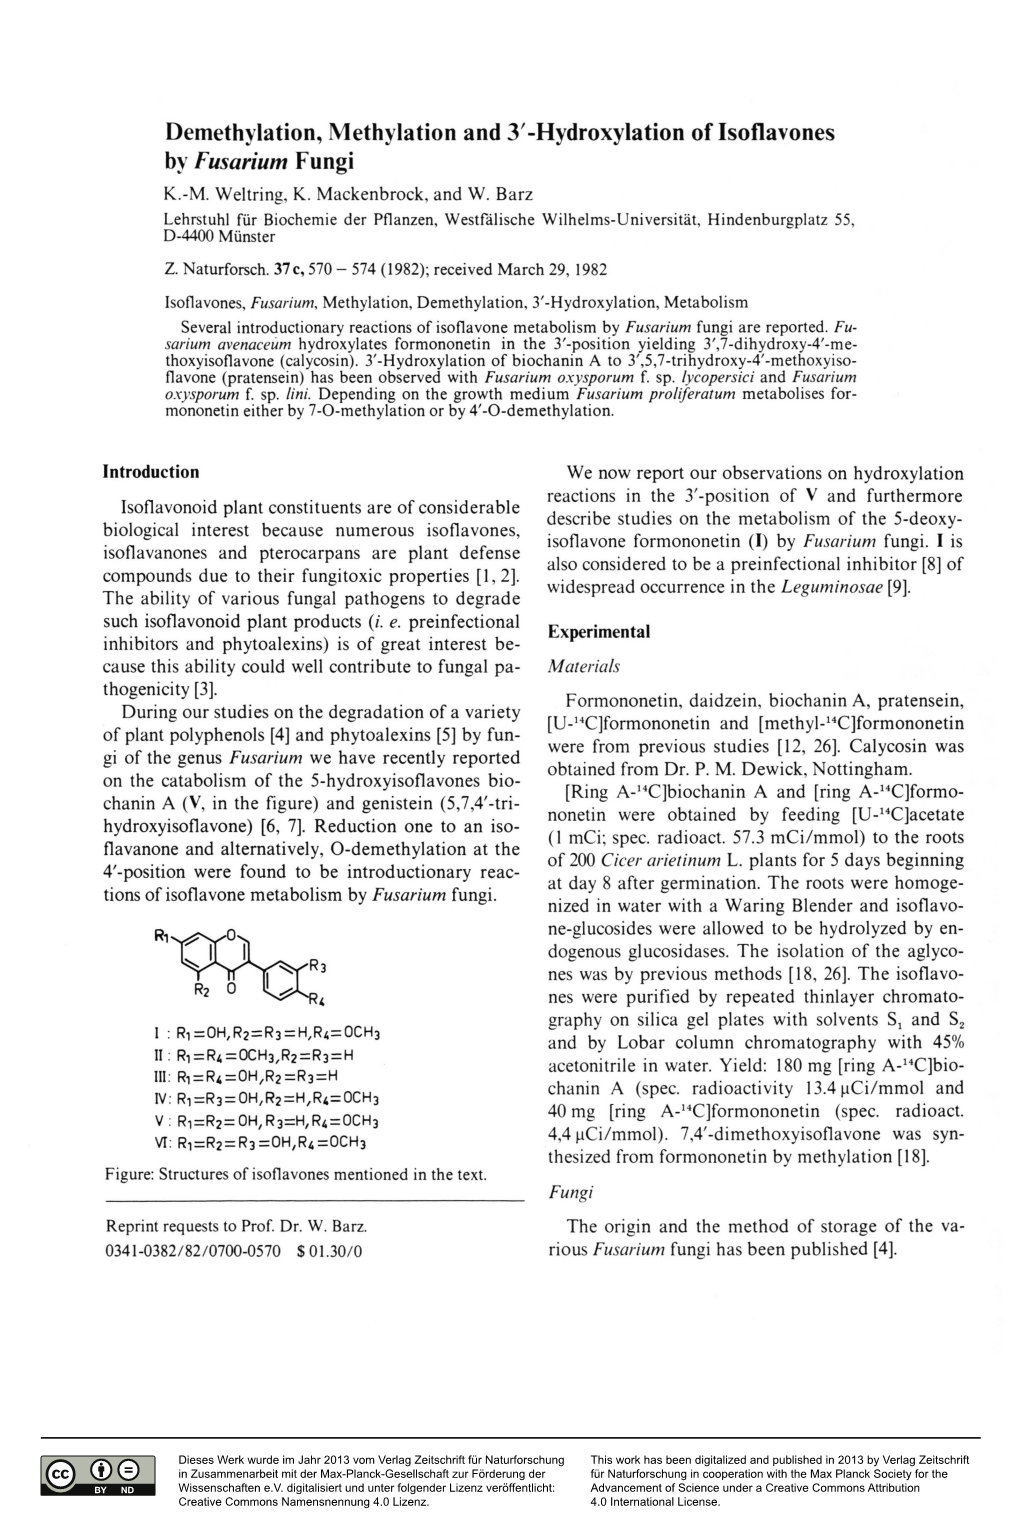 Hydroxylation of Isoflavones Bv Fusarium Fungi K.-M